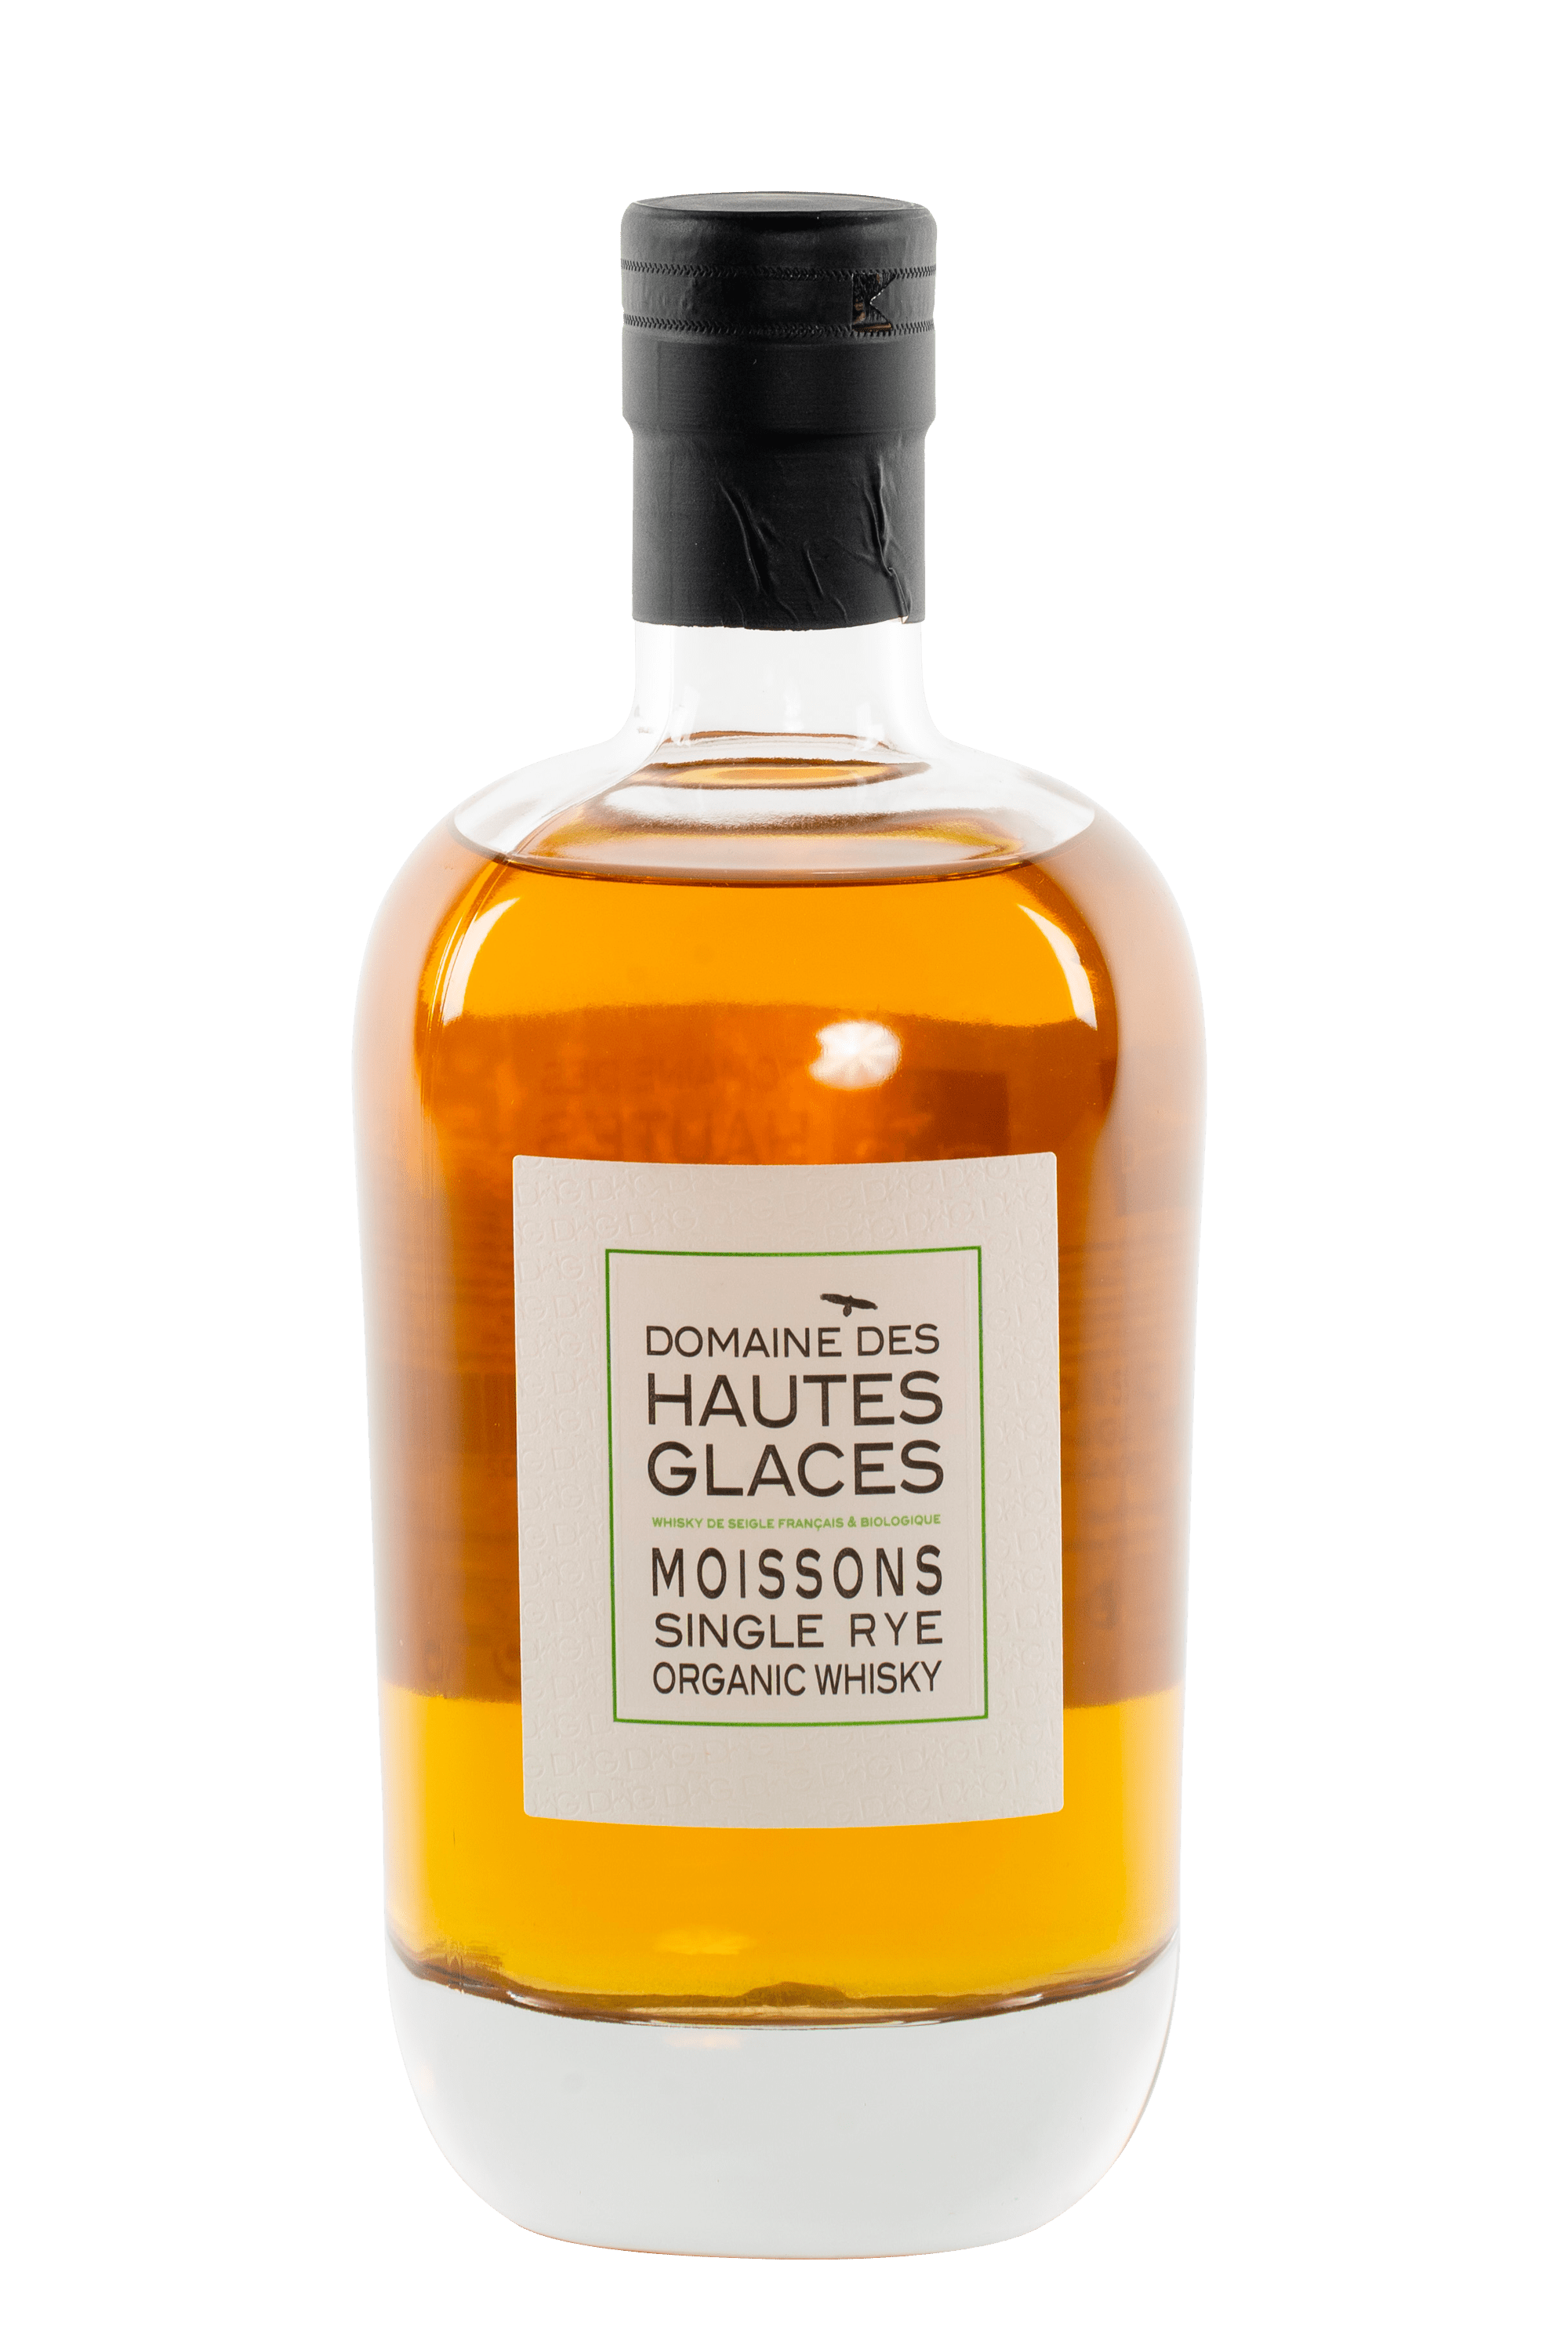 Bouteille de whisky français Moissons Rye du Domaine des Hautes Glaces